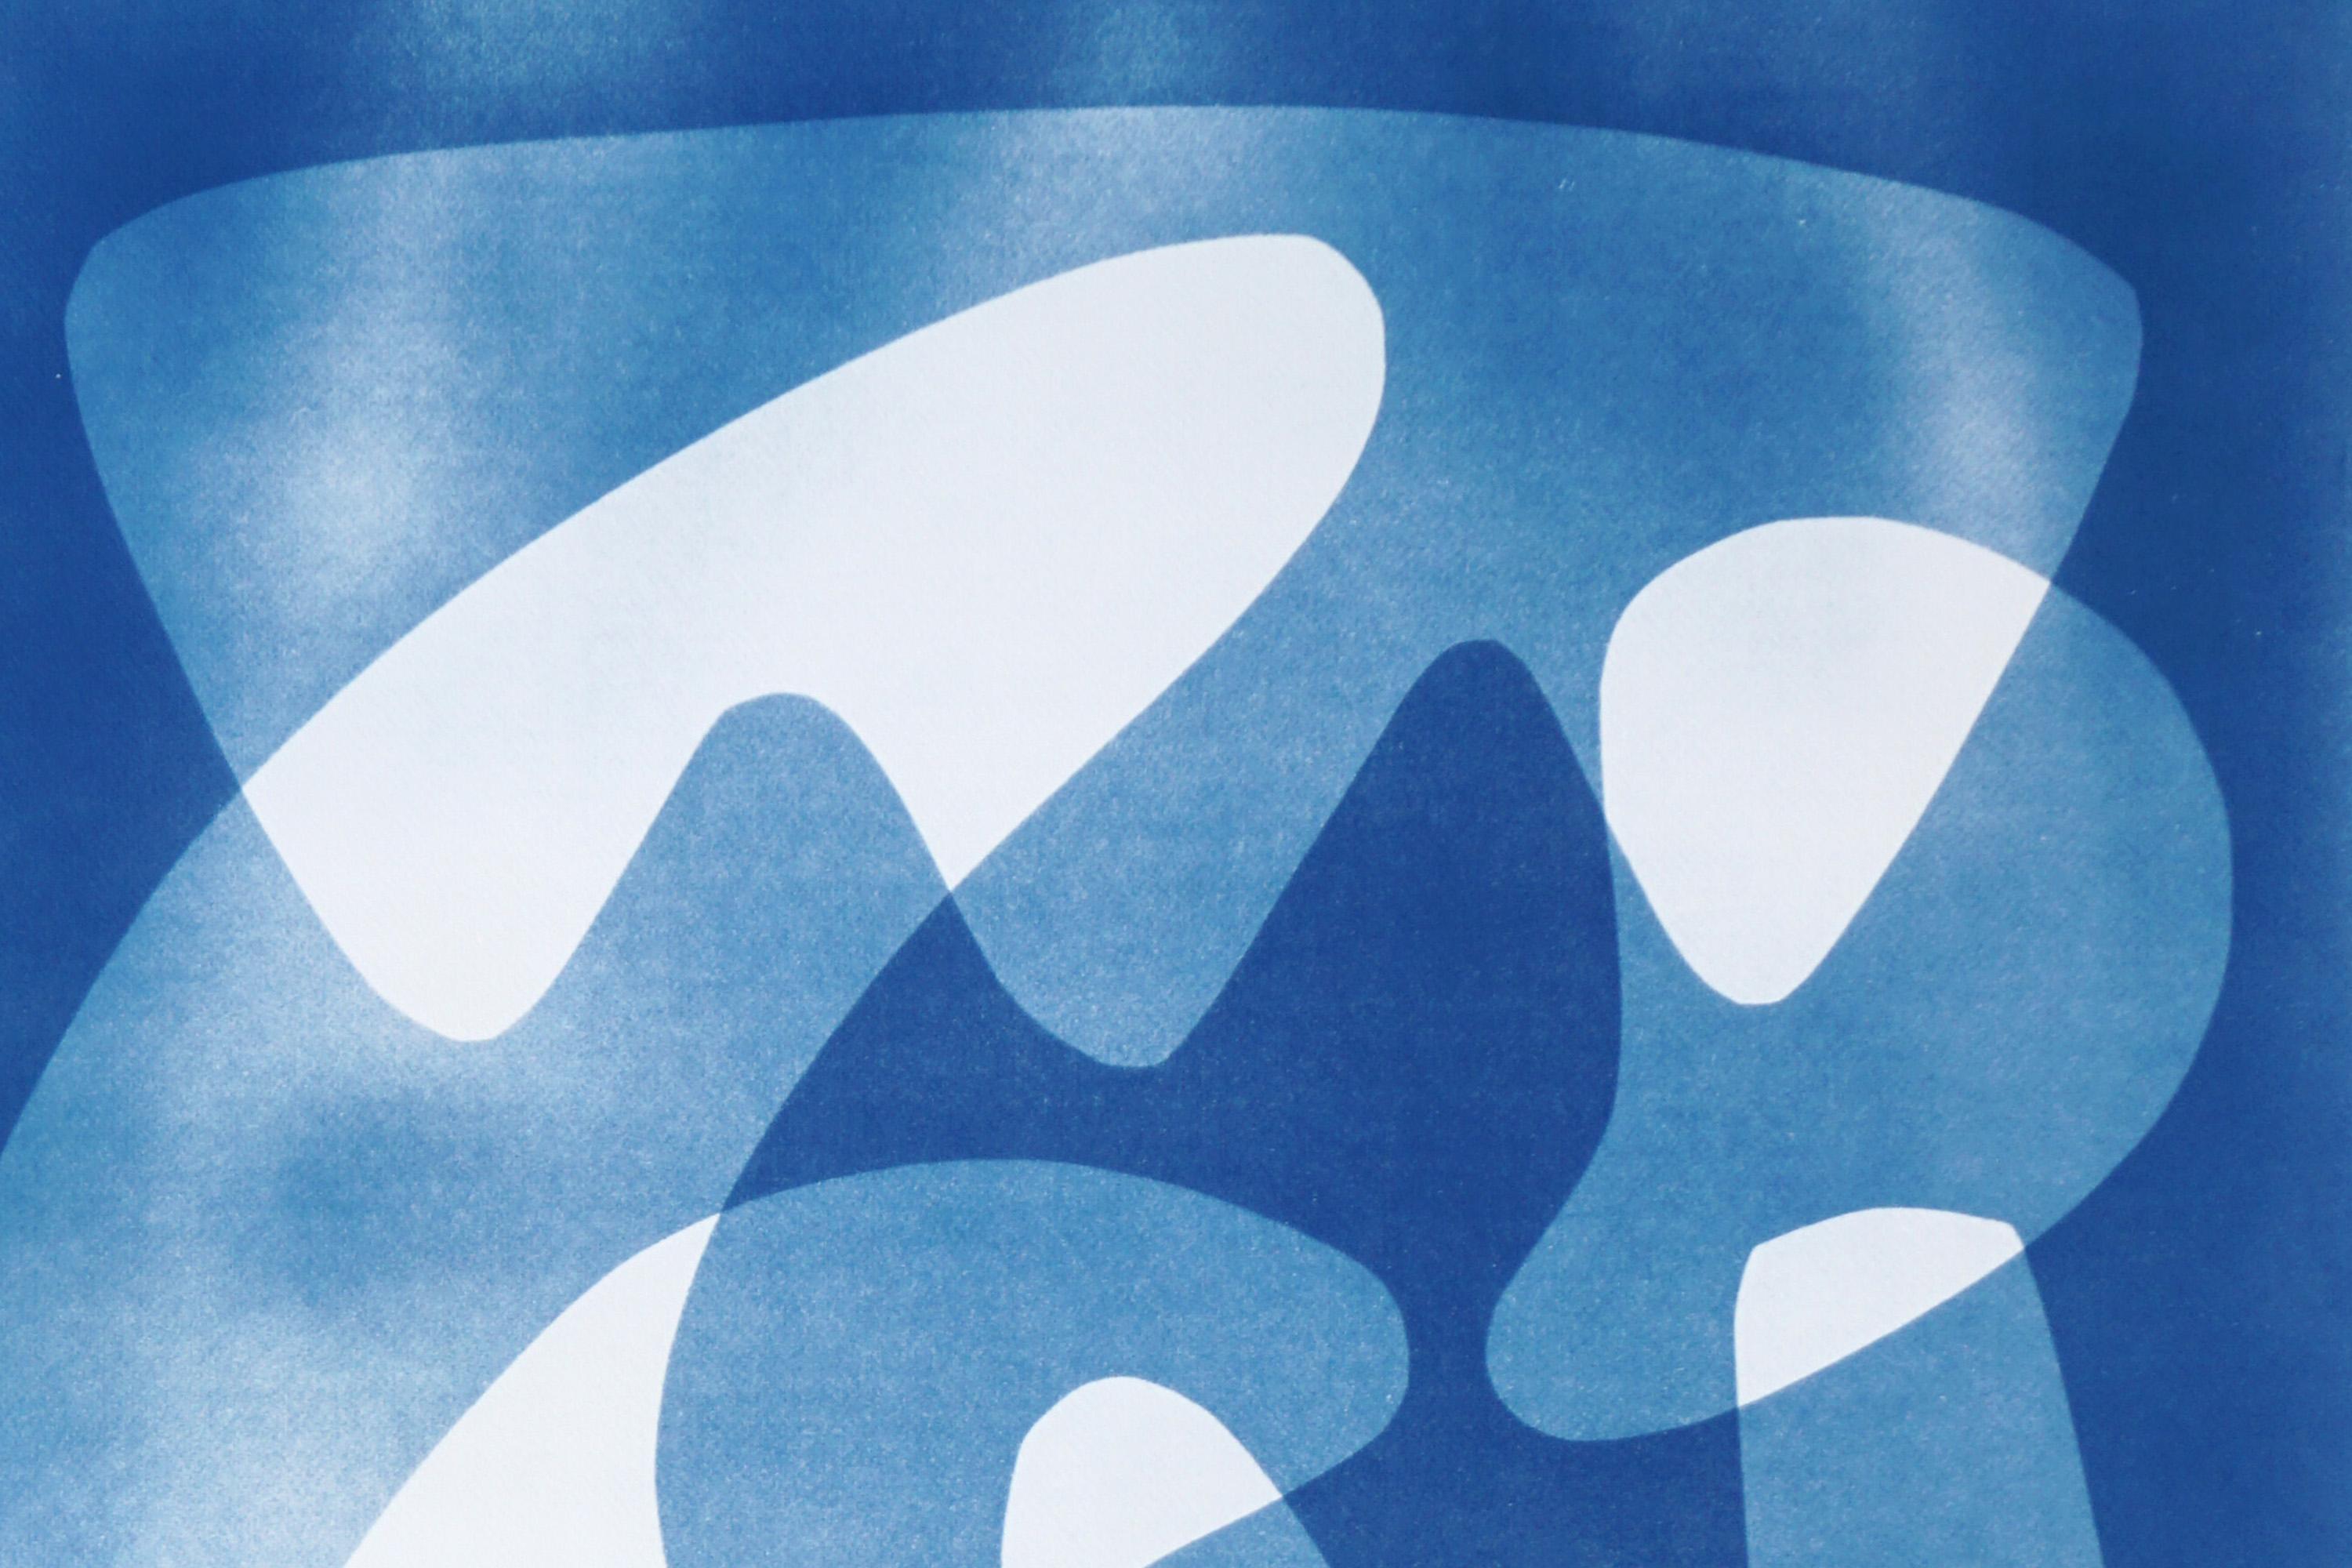 Des palettes flottantes modernes à motif blanc et bleu, cyanotype unique  - Modernisme américain Print par Kind of Cyan